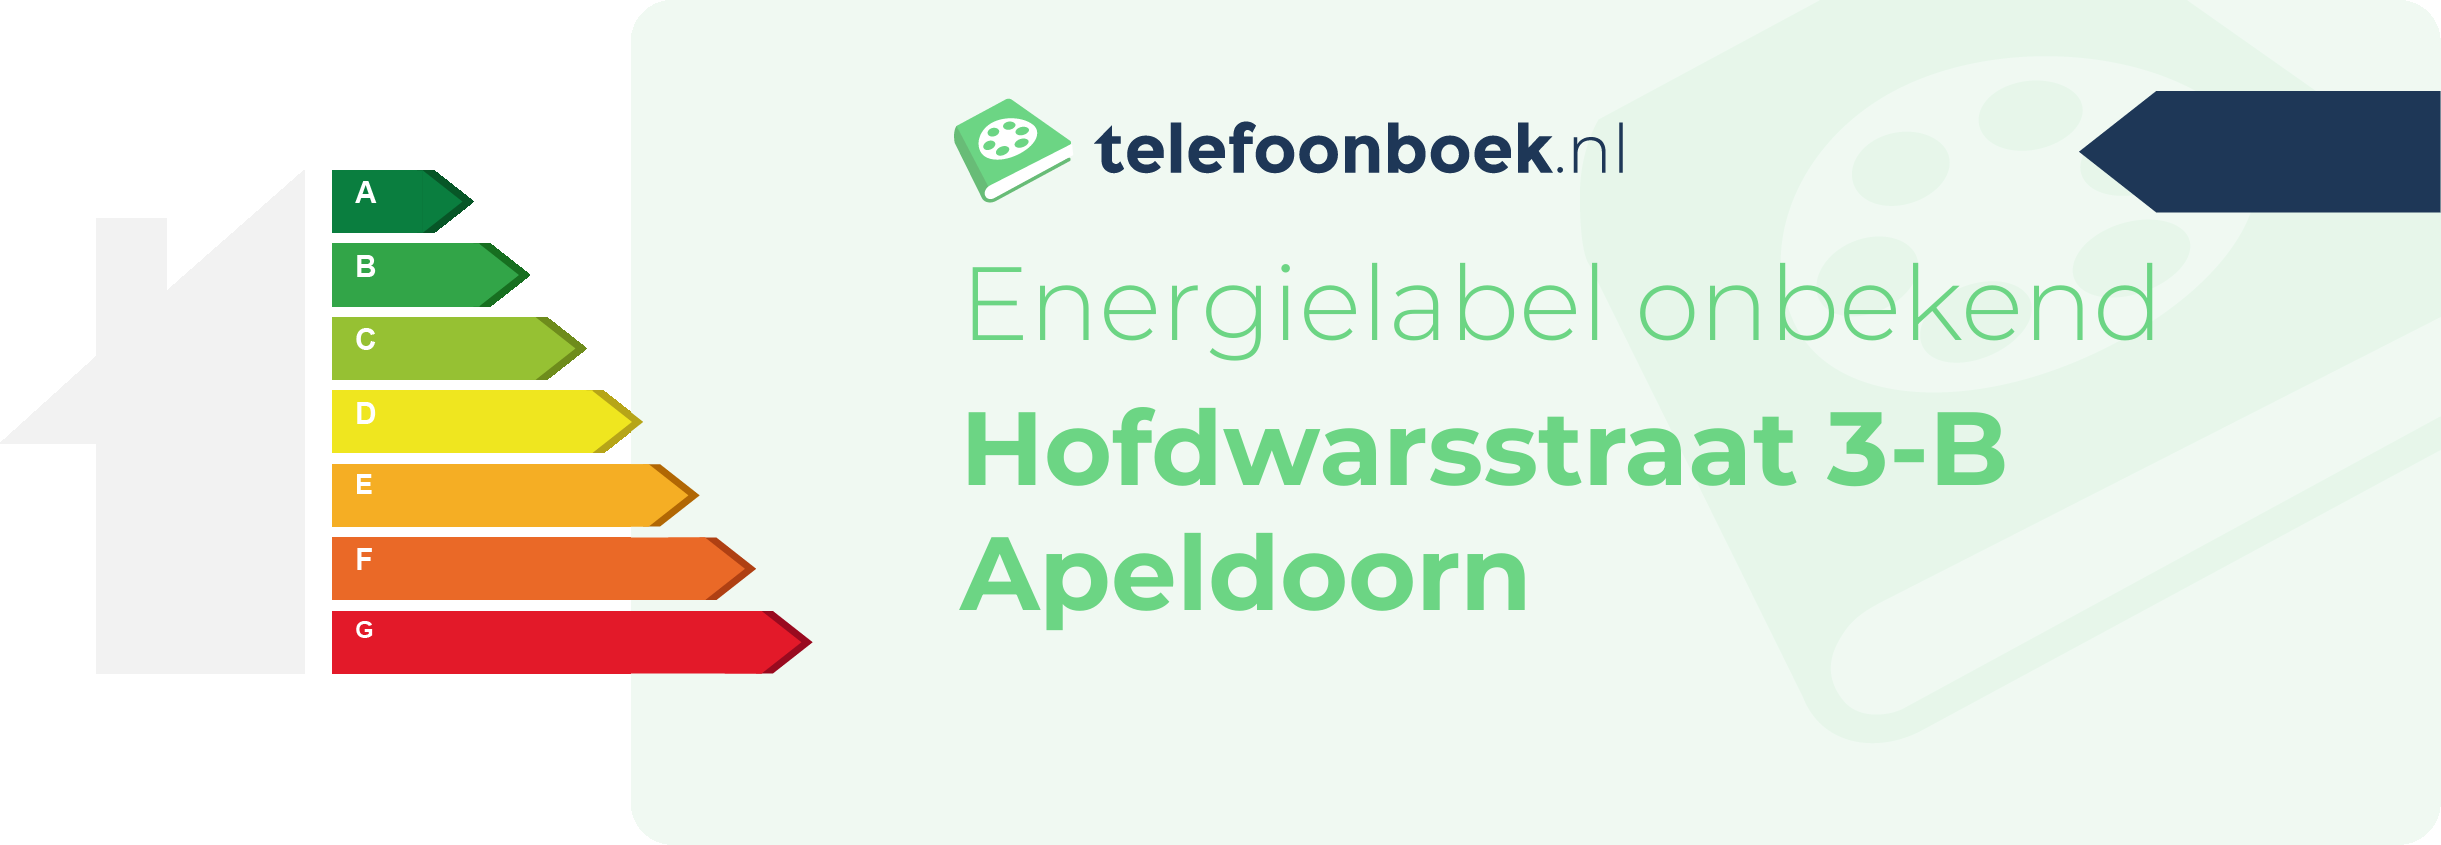 Energielabel Hofdwarsstraat 3-B Apeldoorn